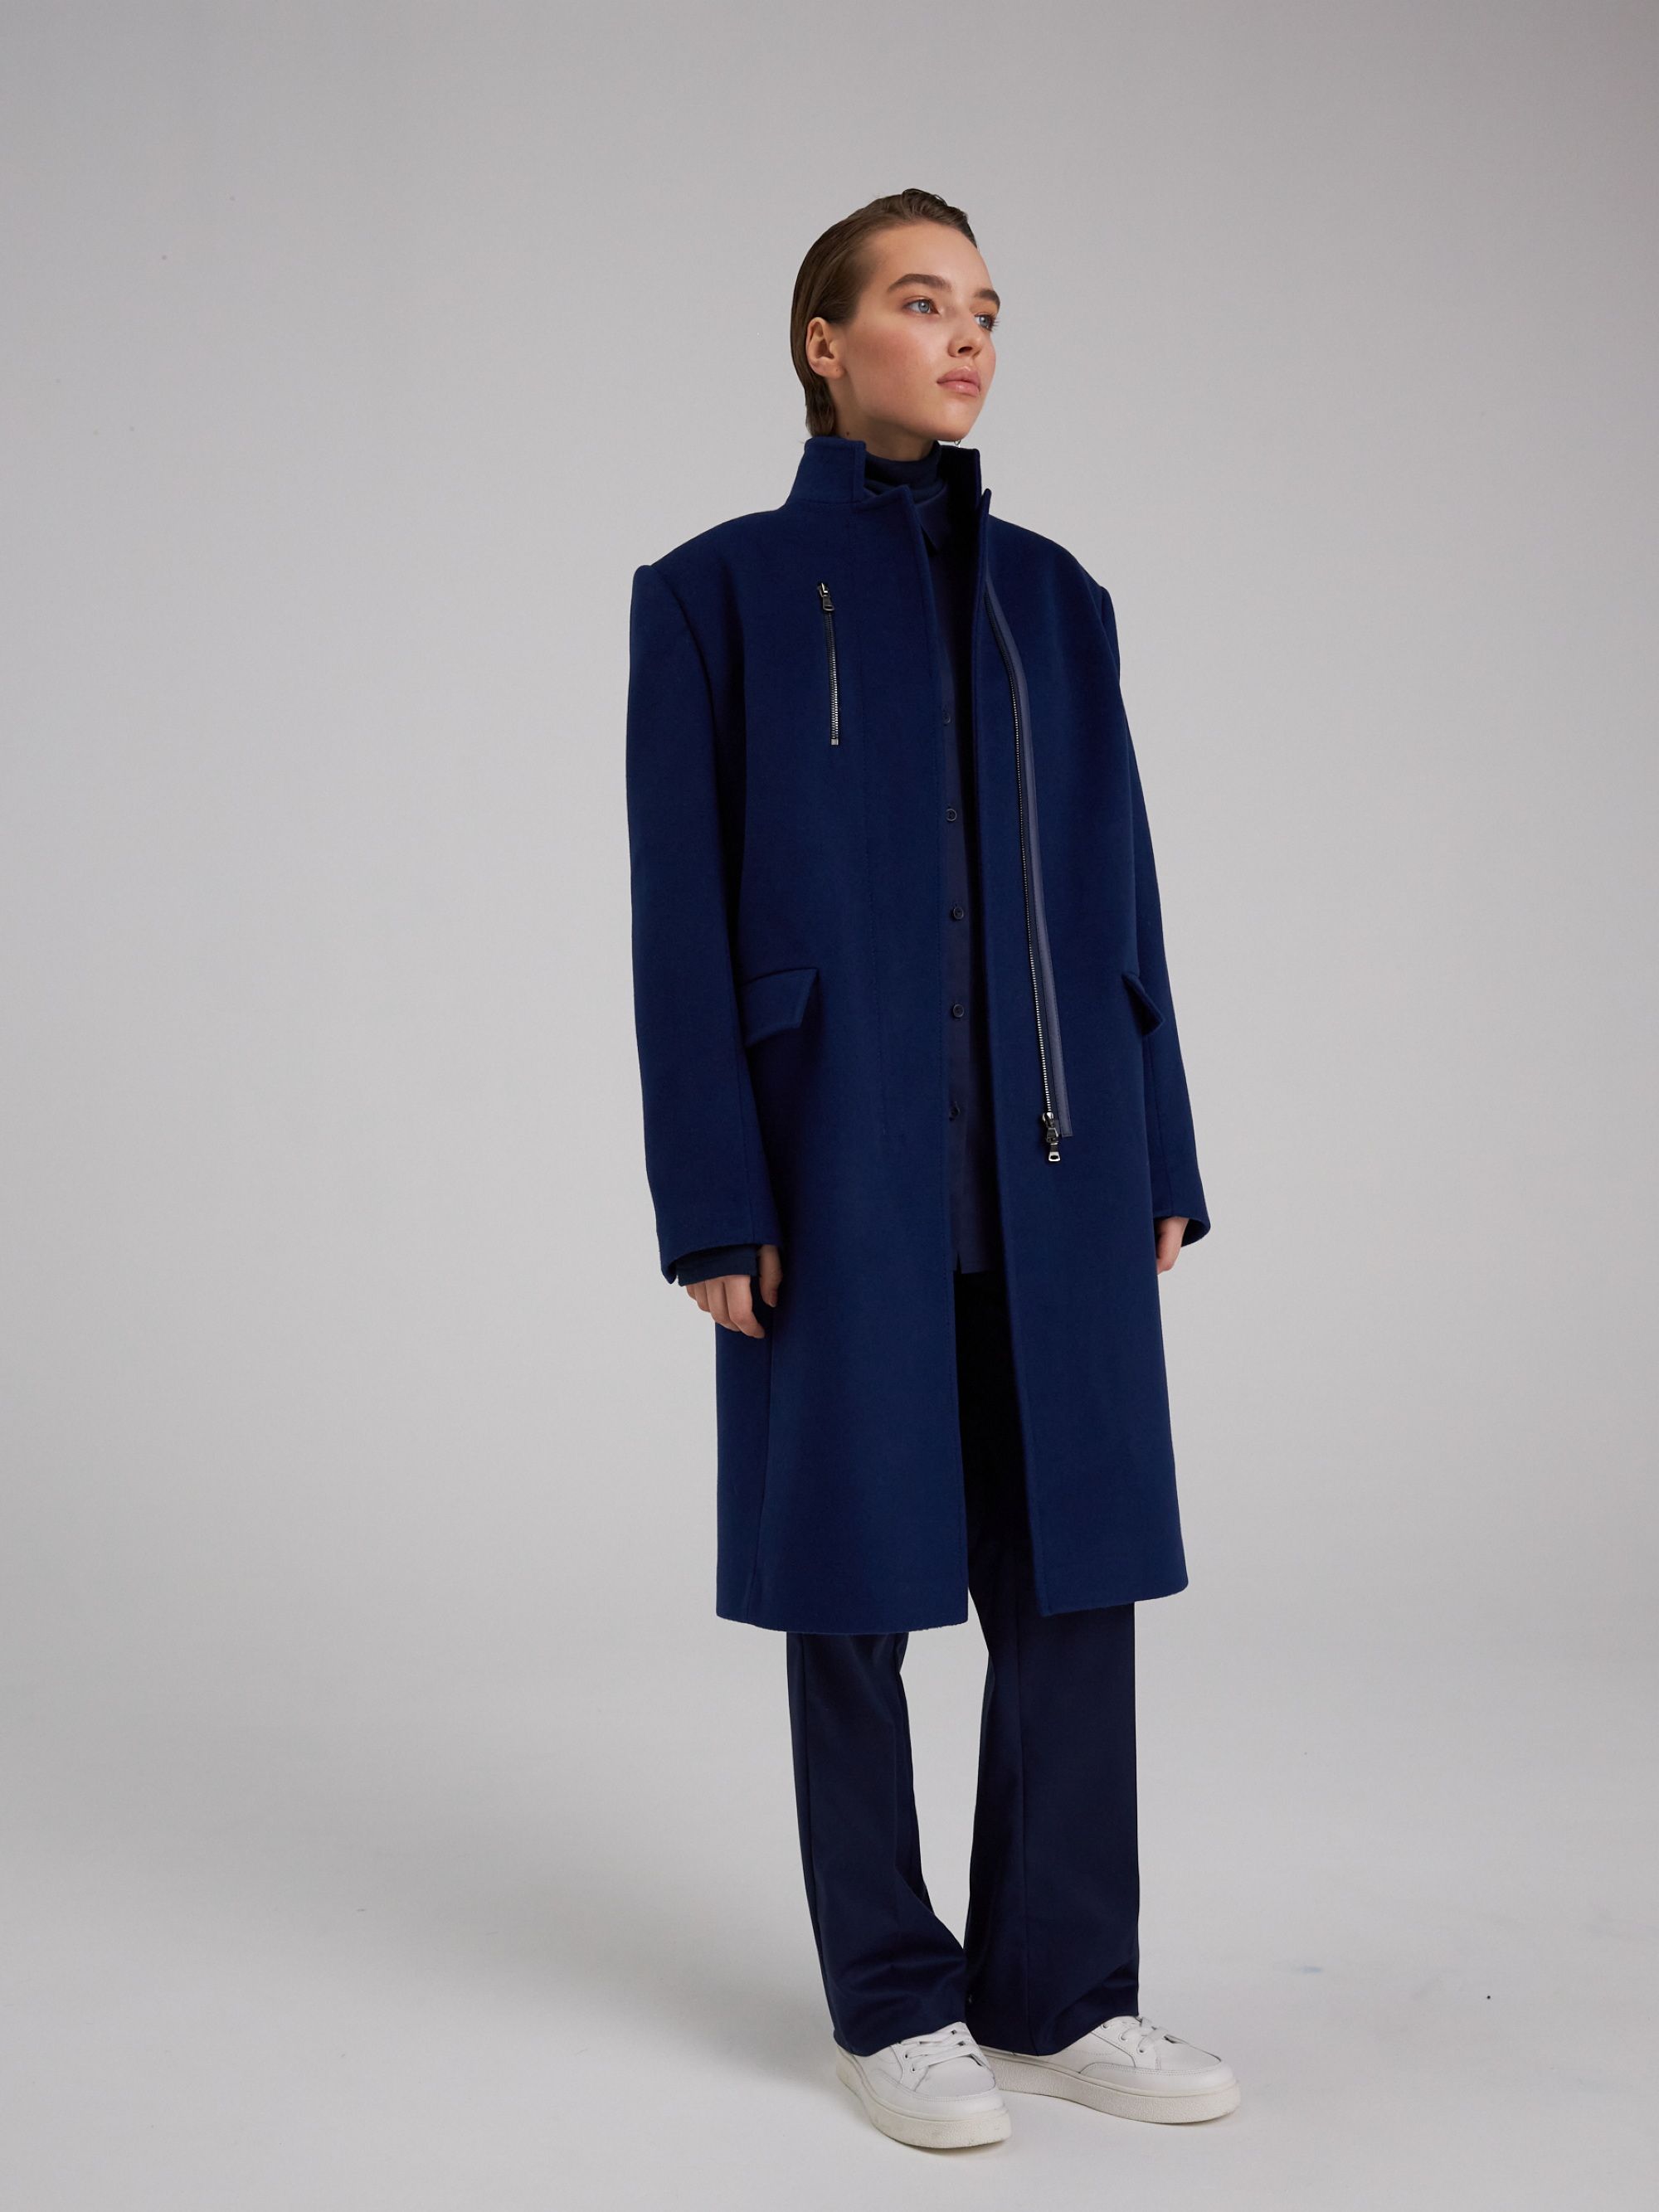 Coat, pattern №997 buy on-line